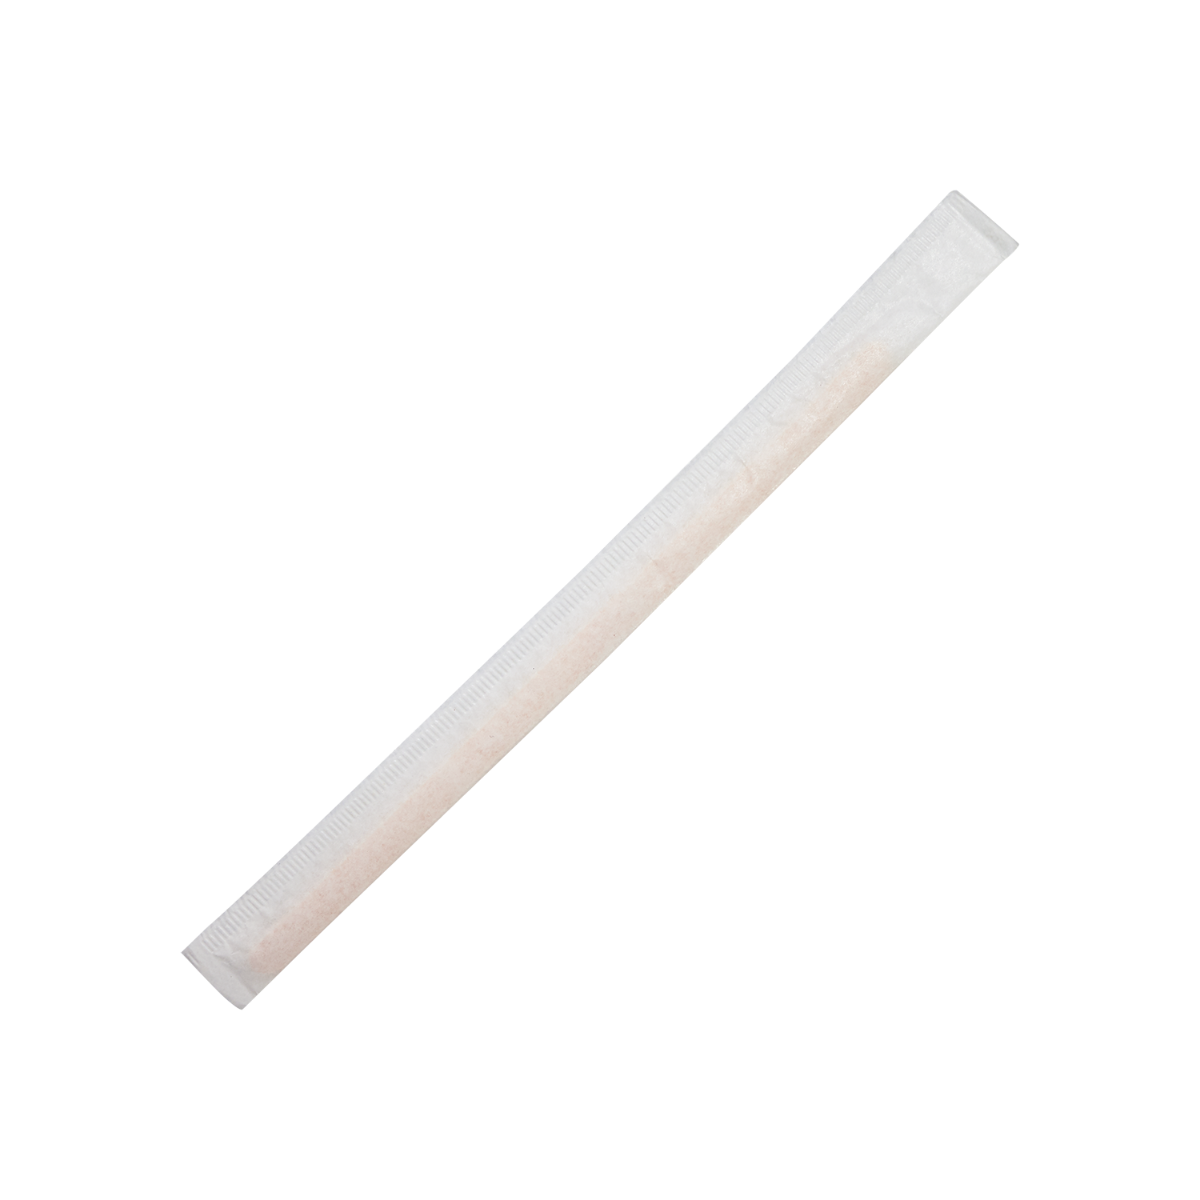 Wooden Stir Sticks - 5.5